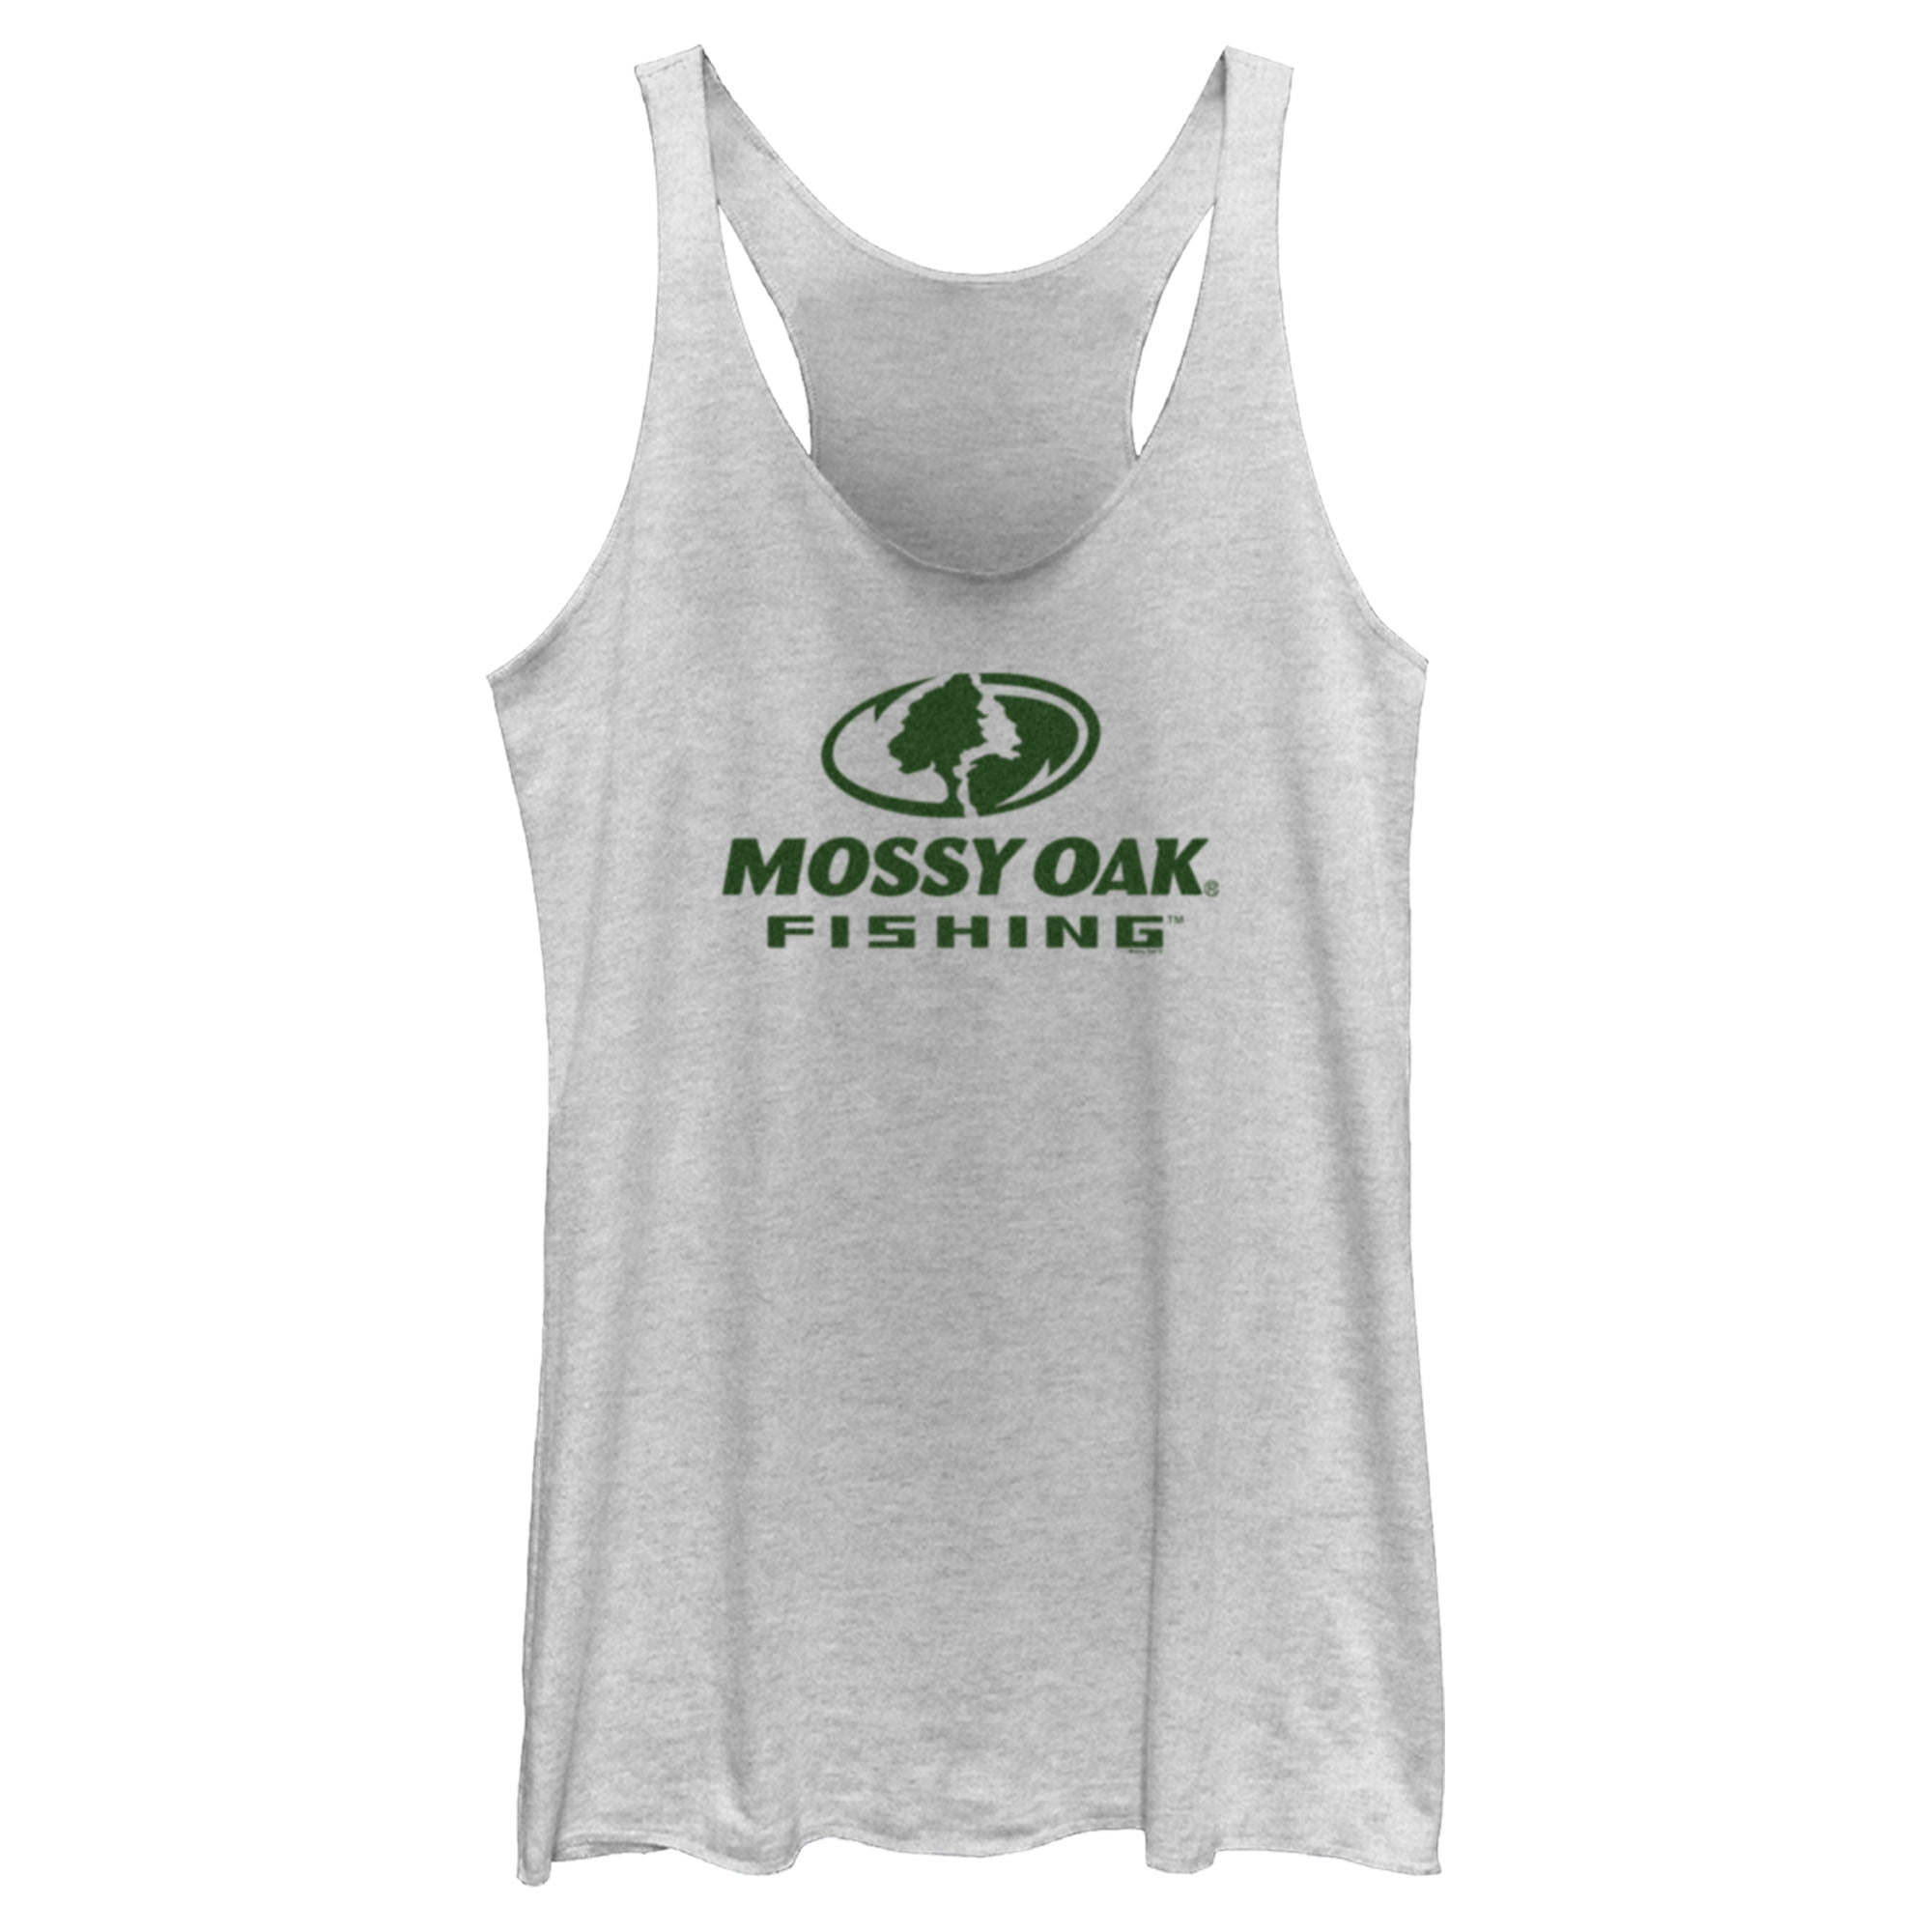 Women's Mossy Oak Fishing Logo Racerback Tank Top White Heather X